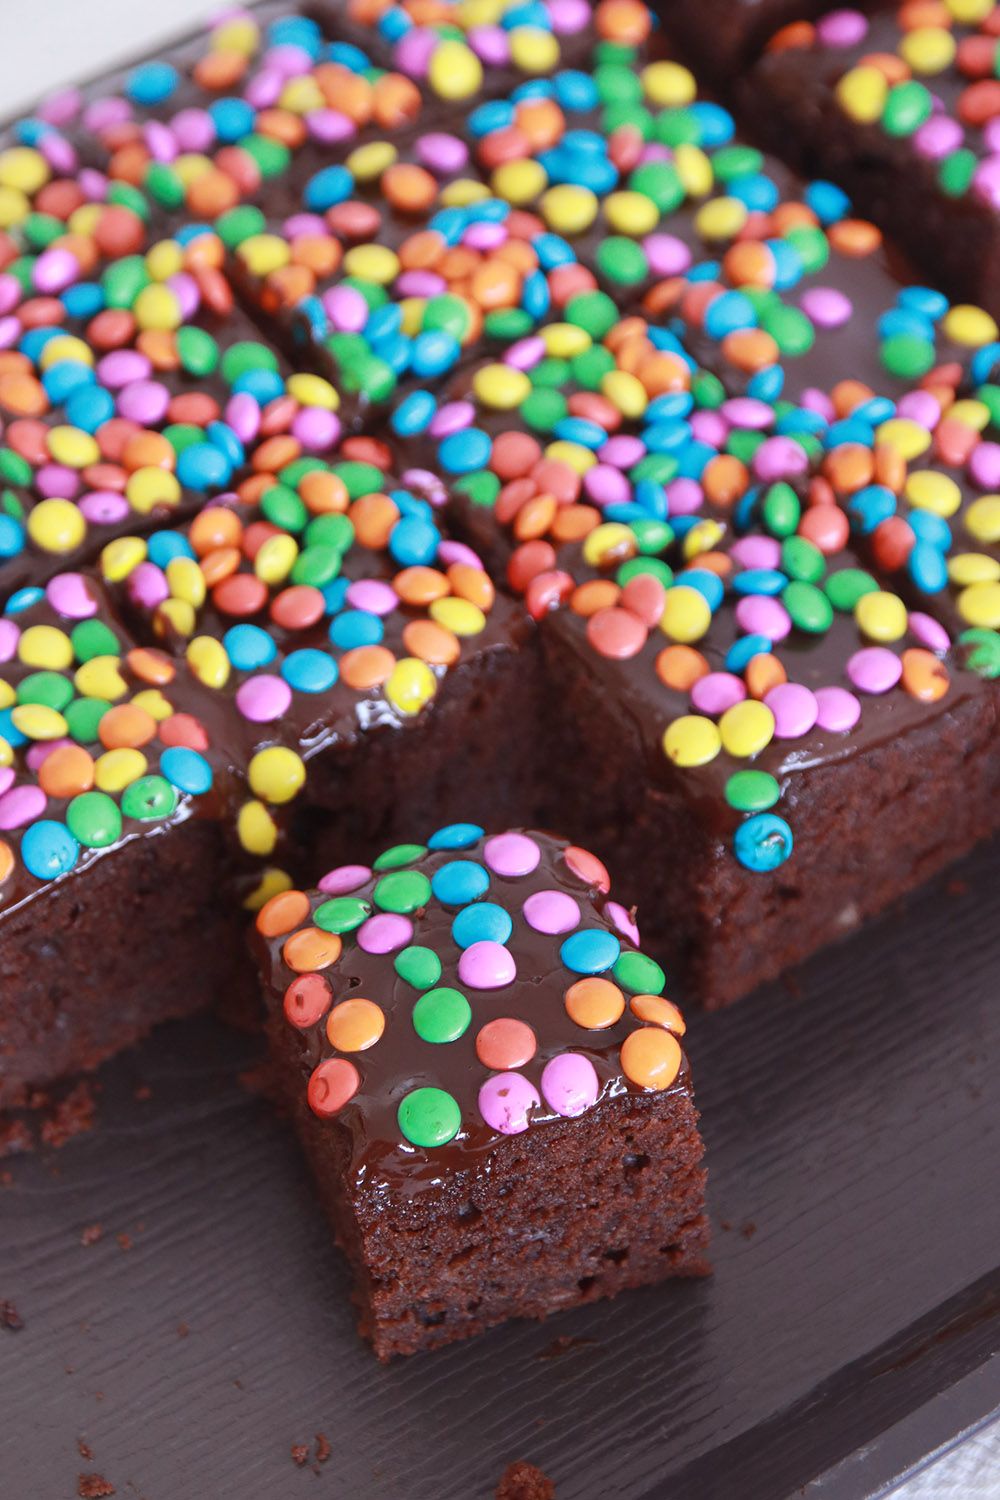 קוביות עוגת שוקולד לגן עם סוכריות | צילום: נטלי לוין